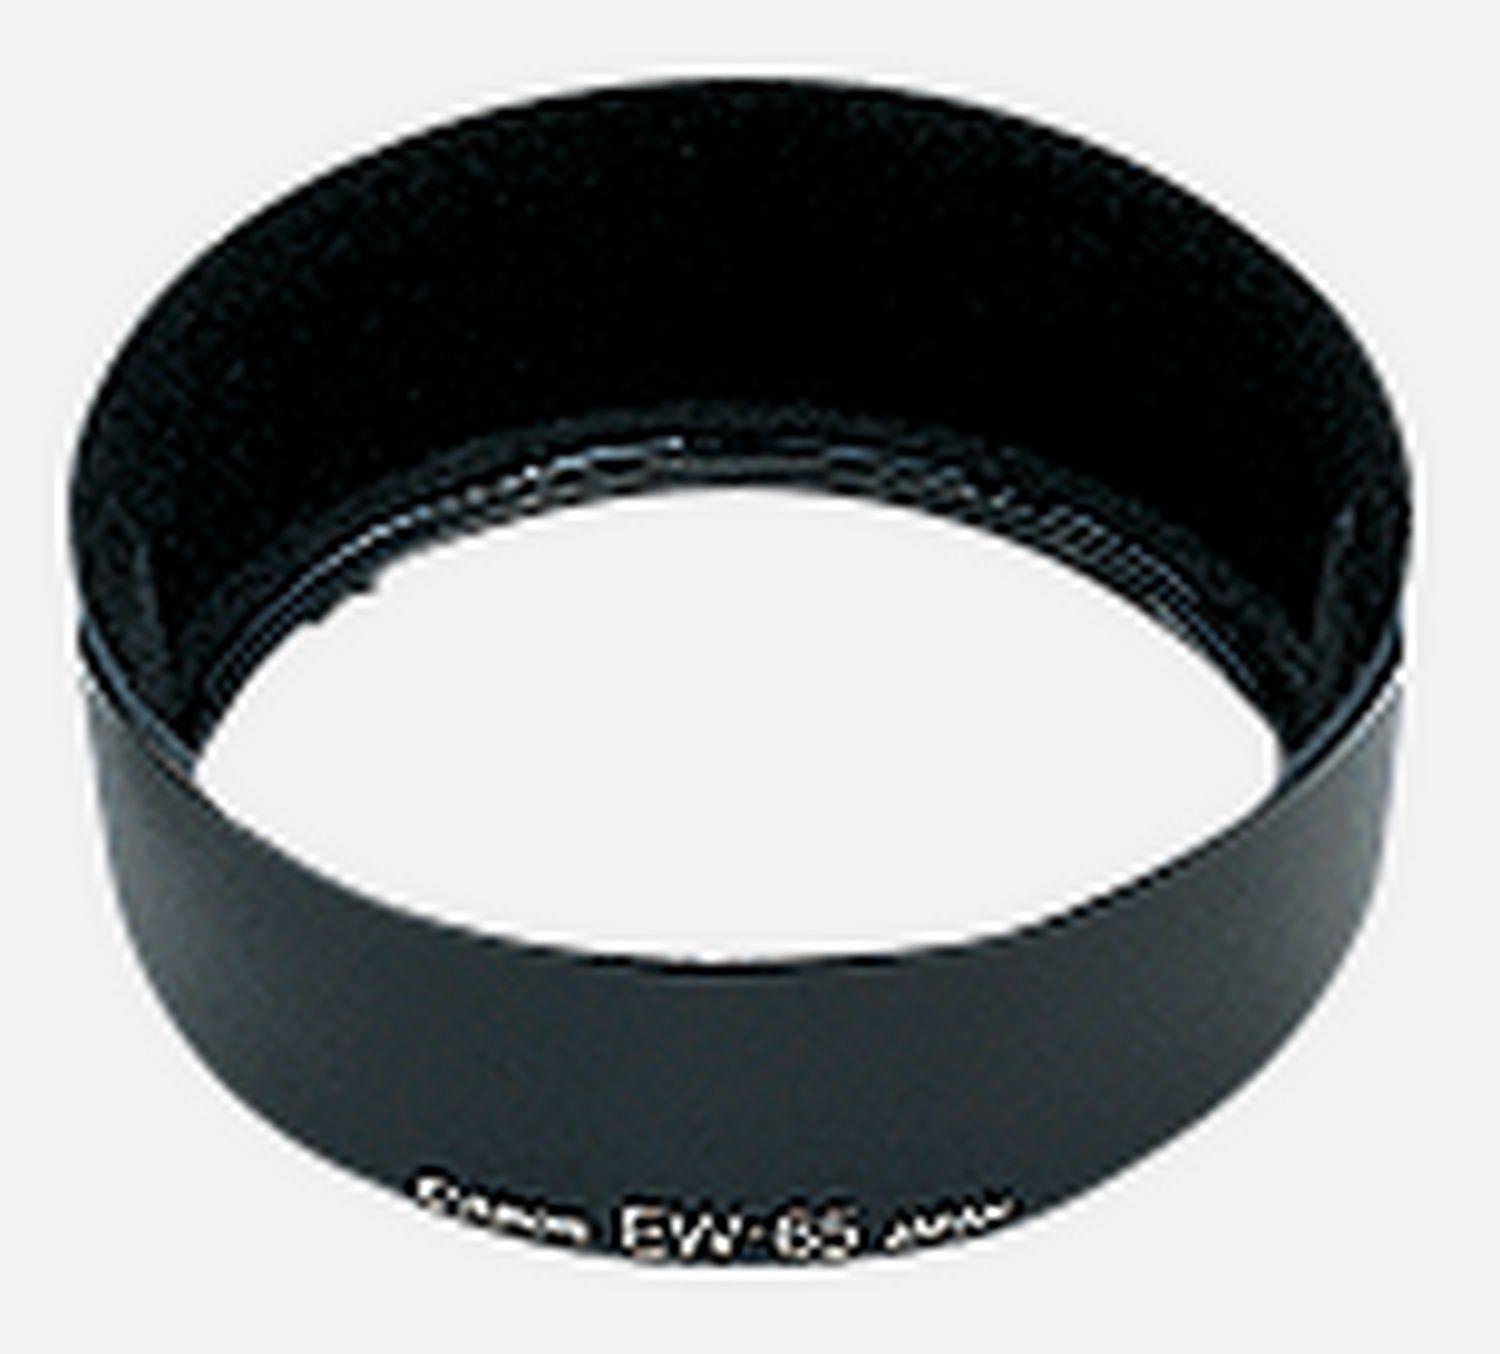 Passt auf das Objektiv EF 28mm 1:1,8 USM, reduziert Reflexionen, die durch direkt auf die Frontlinse auffallendes Licht hervorgerufen werden.